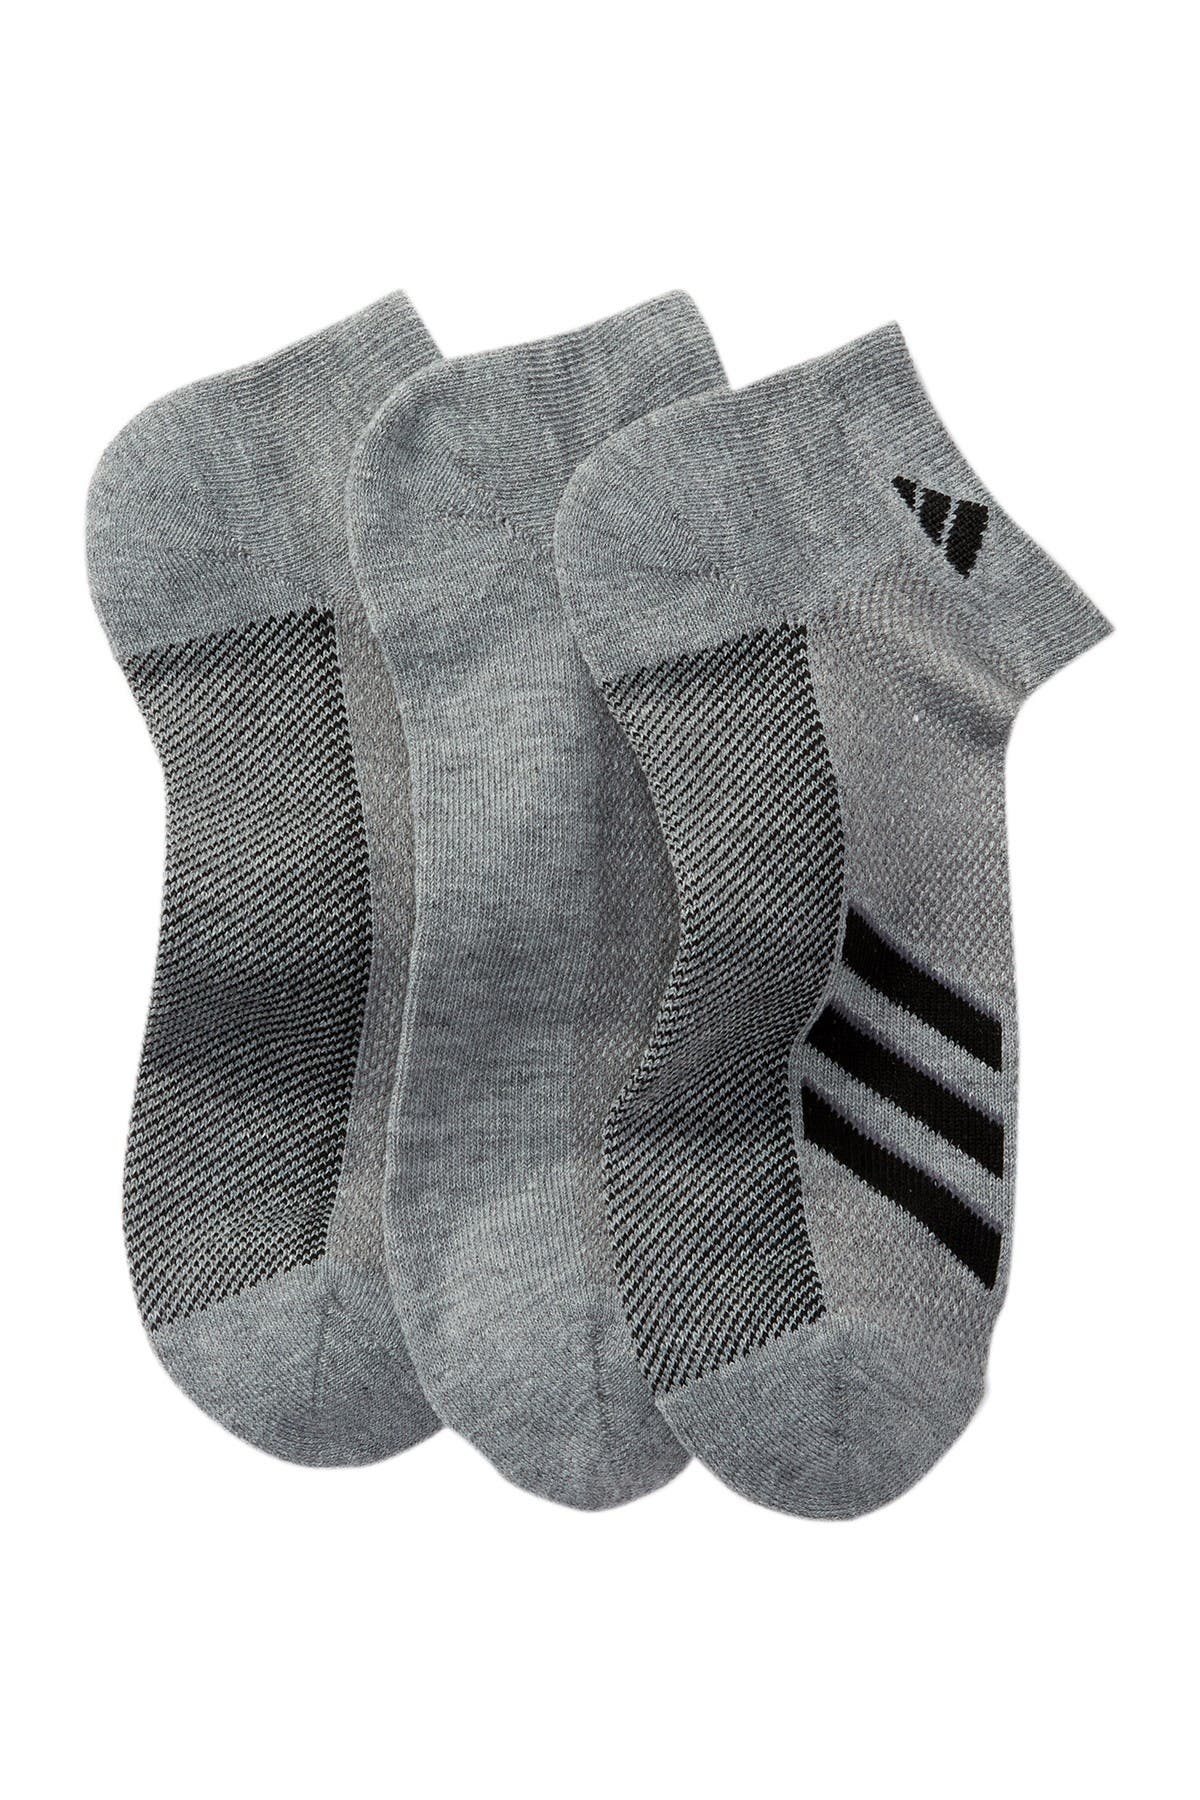 adidas | Climacool Superlite Low Cut Socks - Pack of 3 | Nordstrom Rack